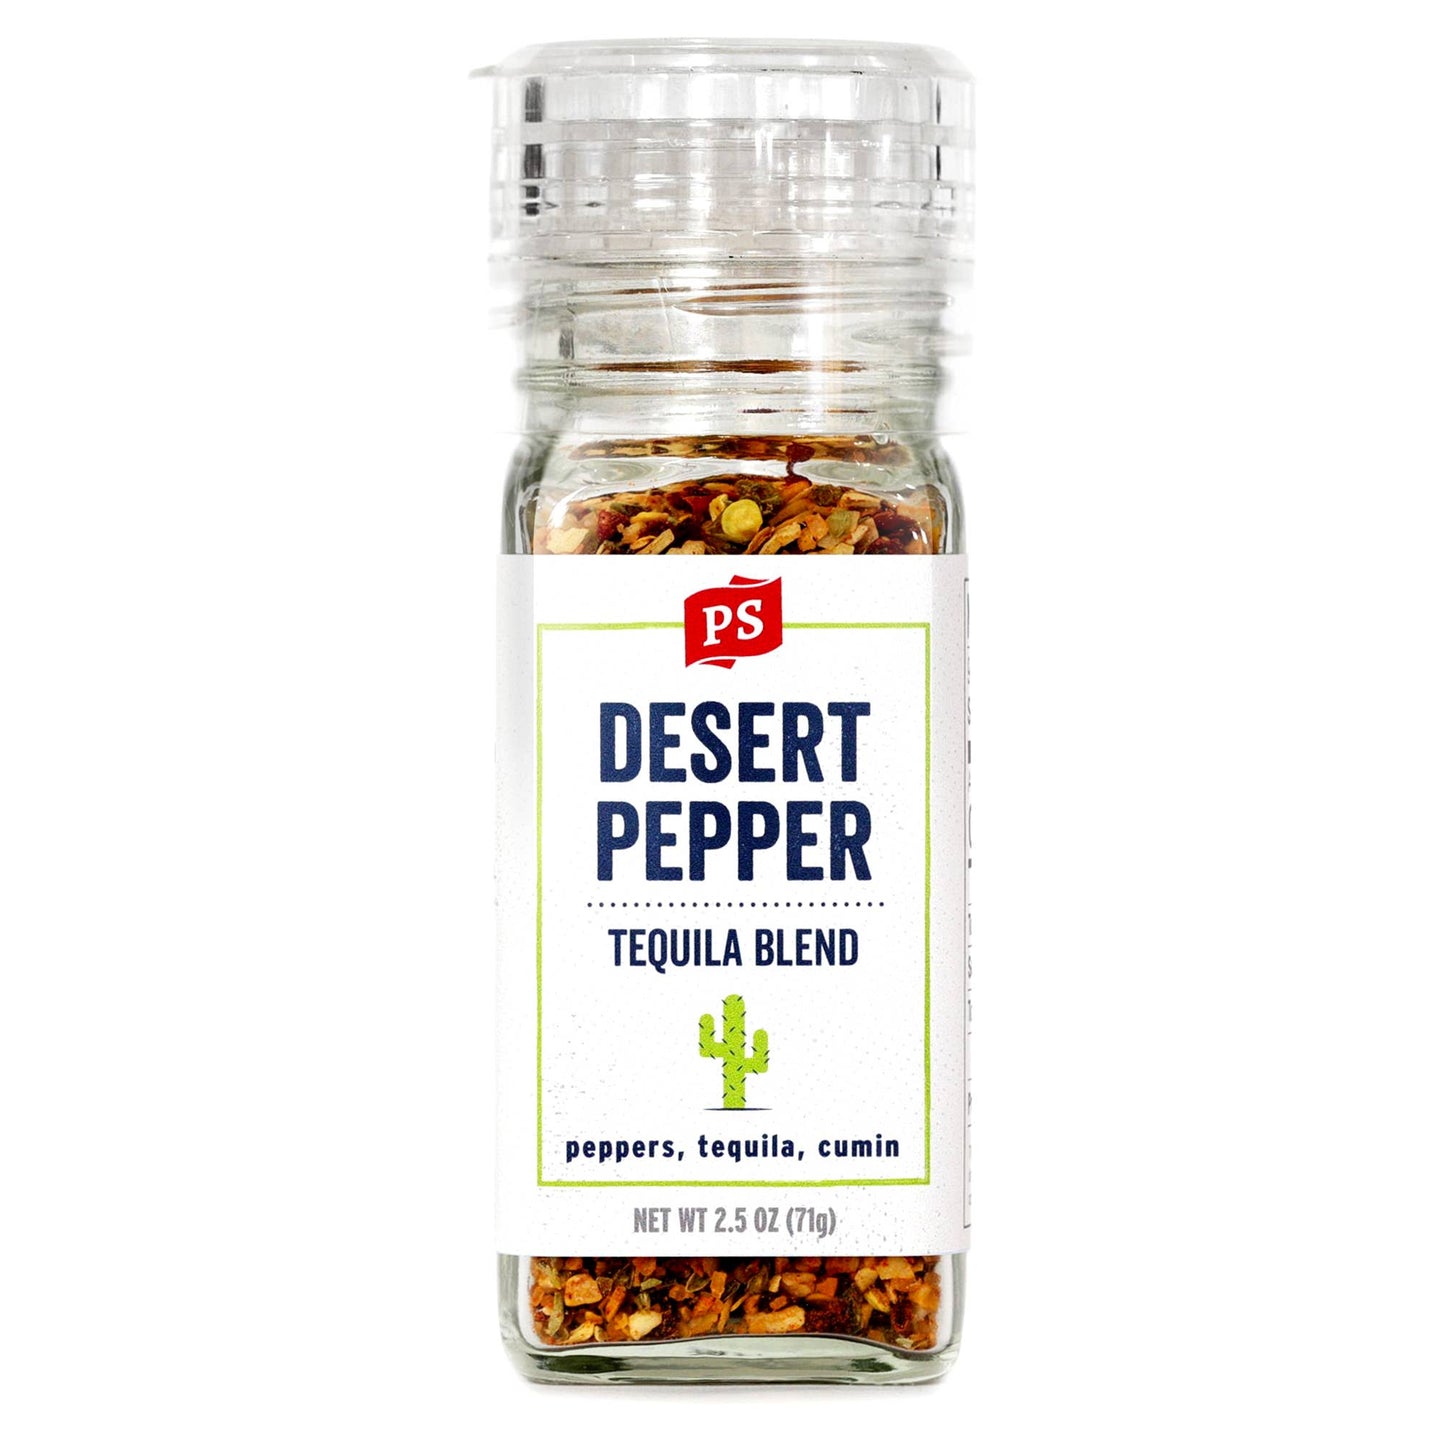 Desert Pepper - Tequila Blend